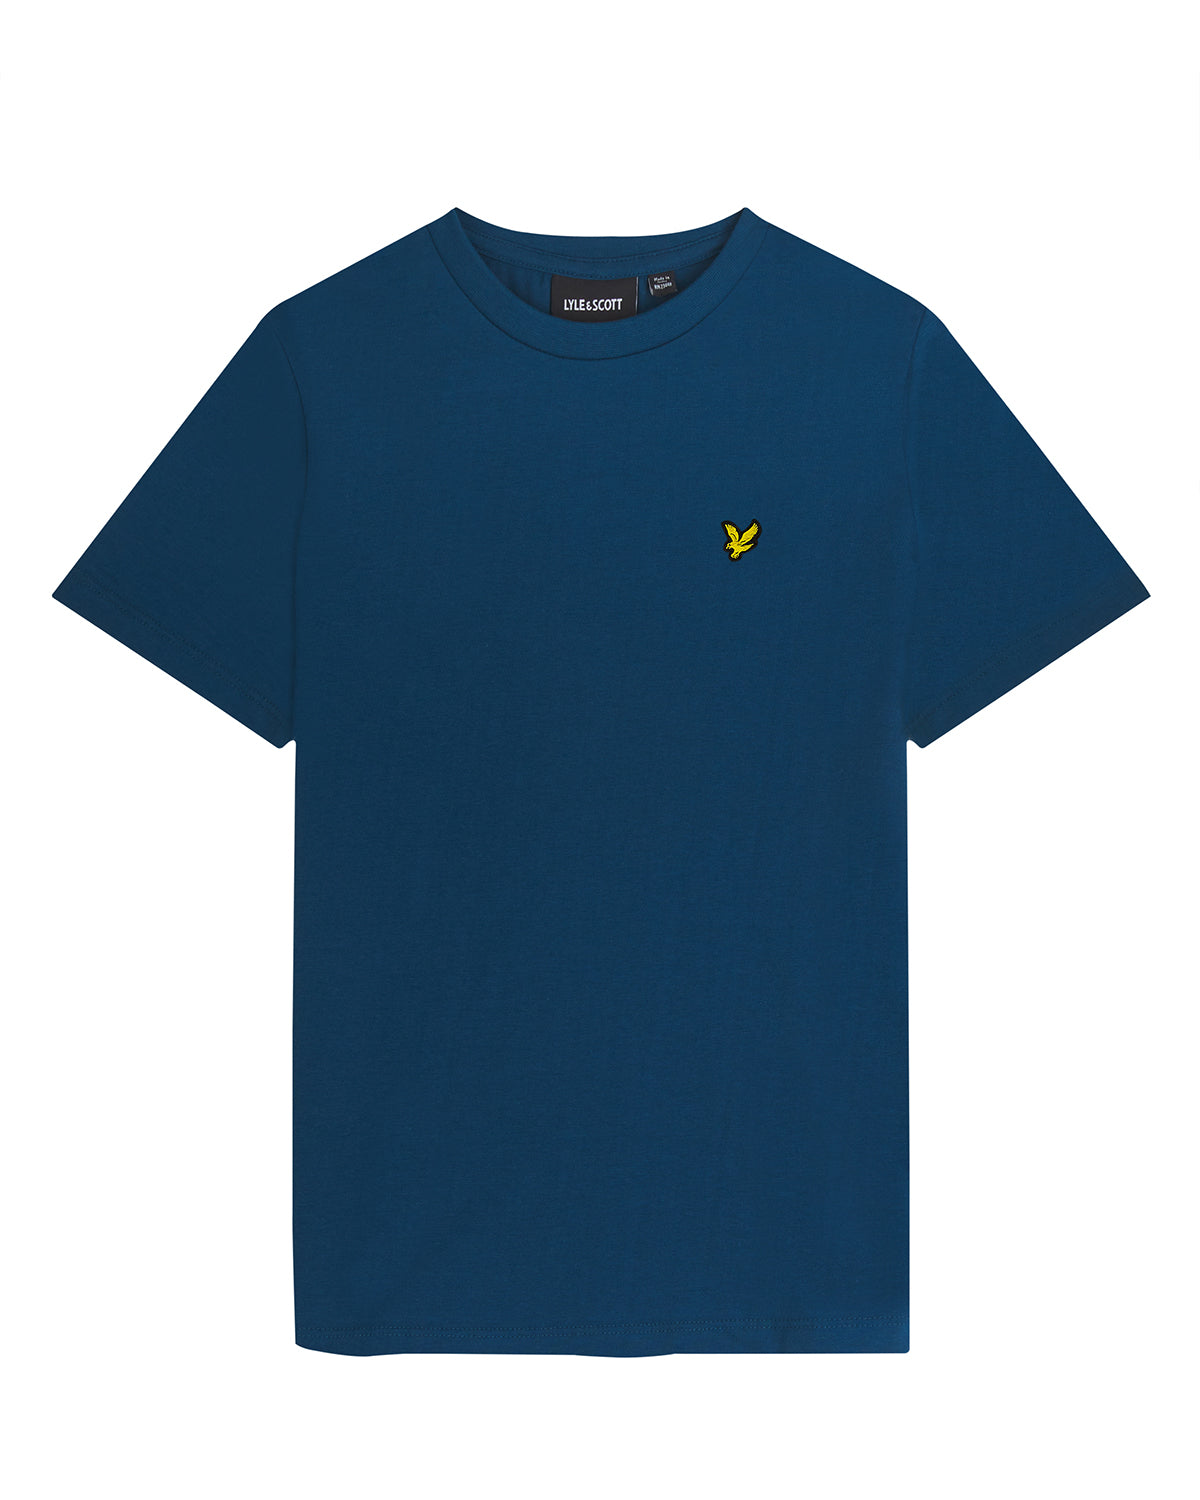 Jongens Plain T-shirt van Lyle & Scott in de kleur W992 Apres Navy in maat 170-176.